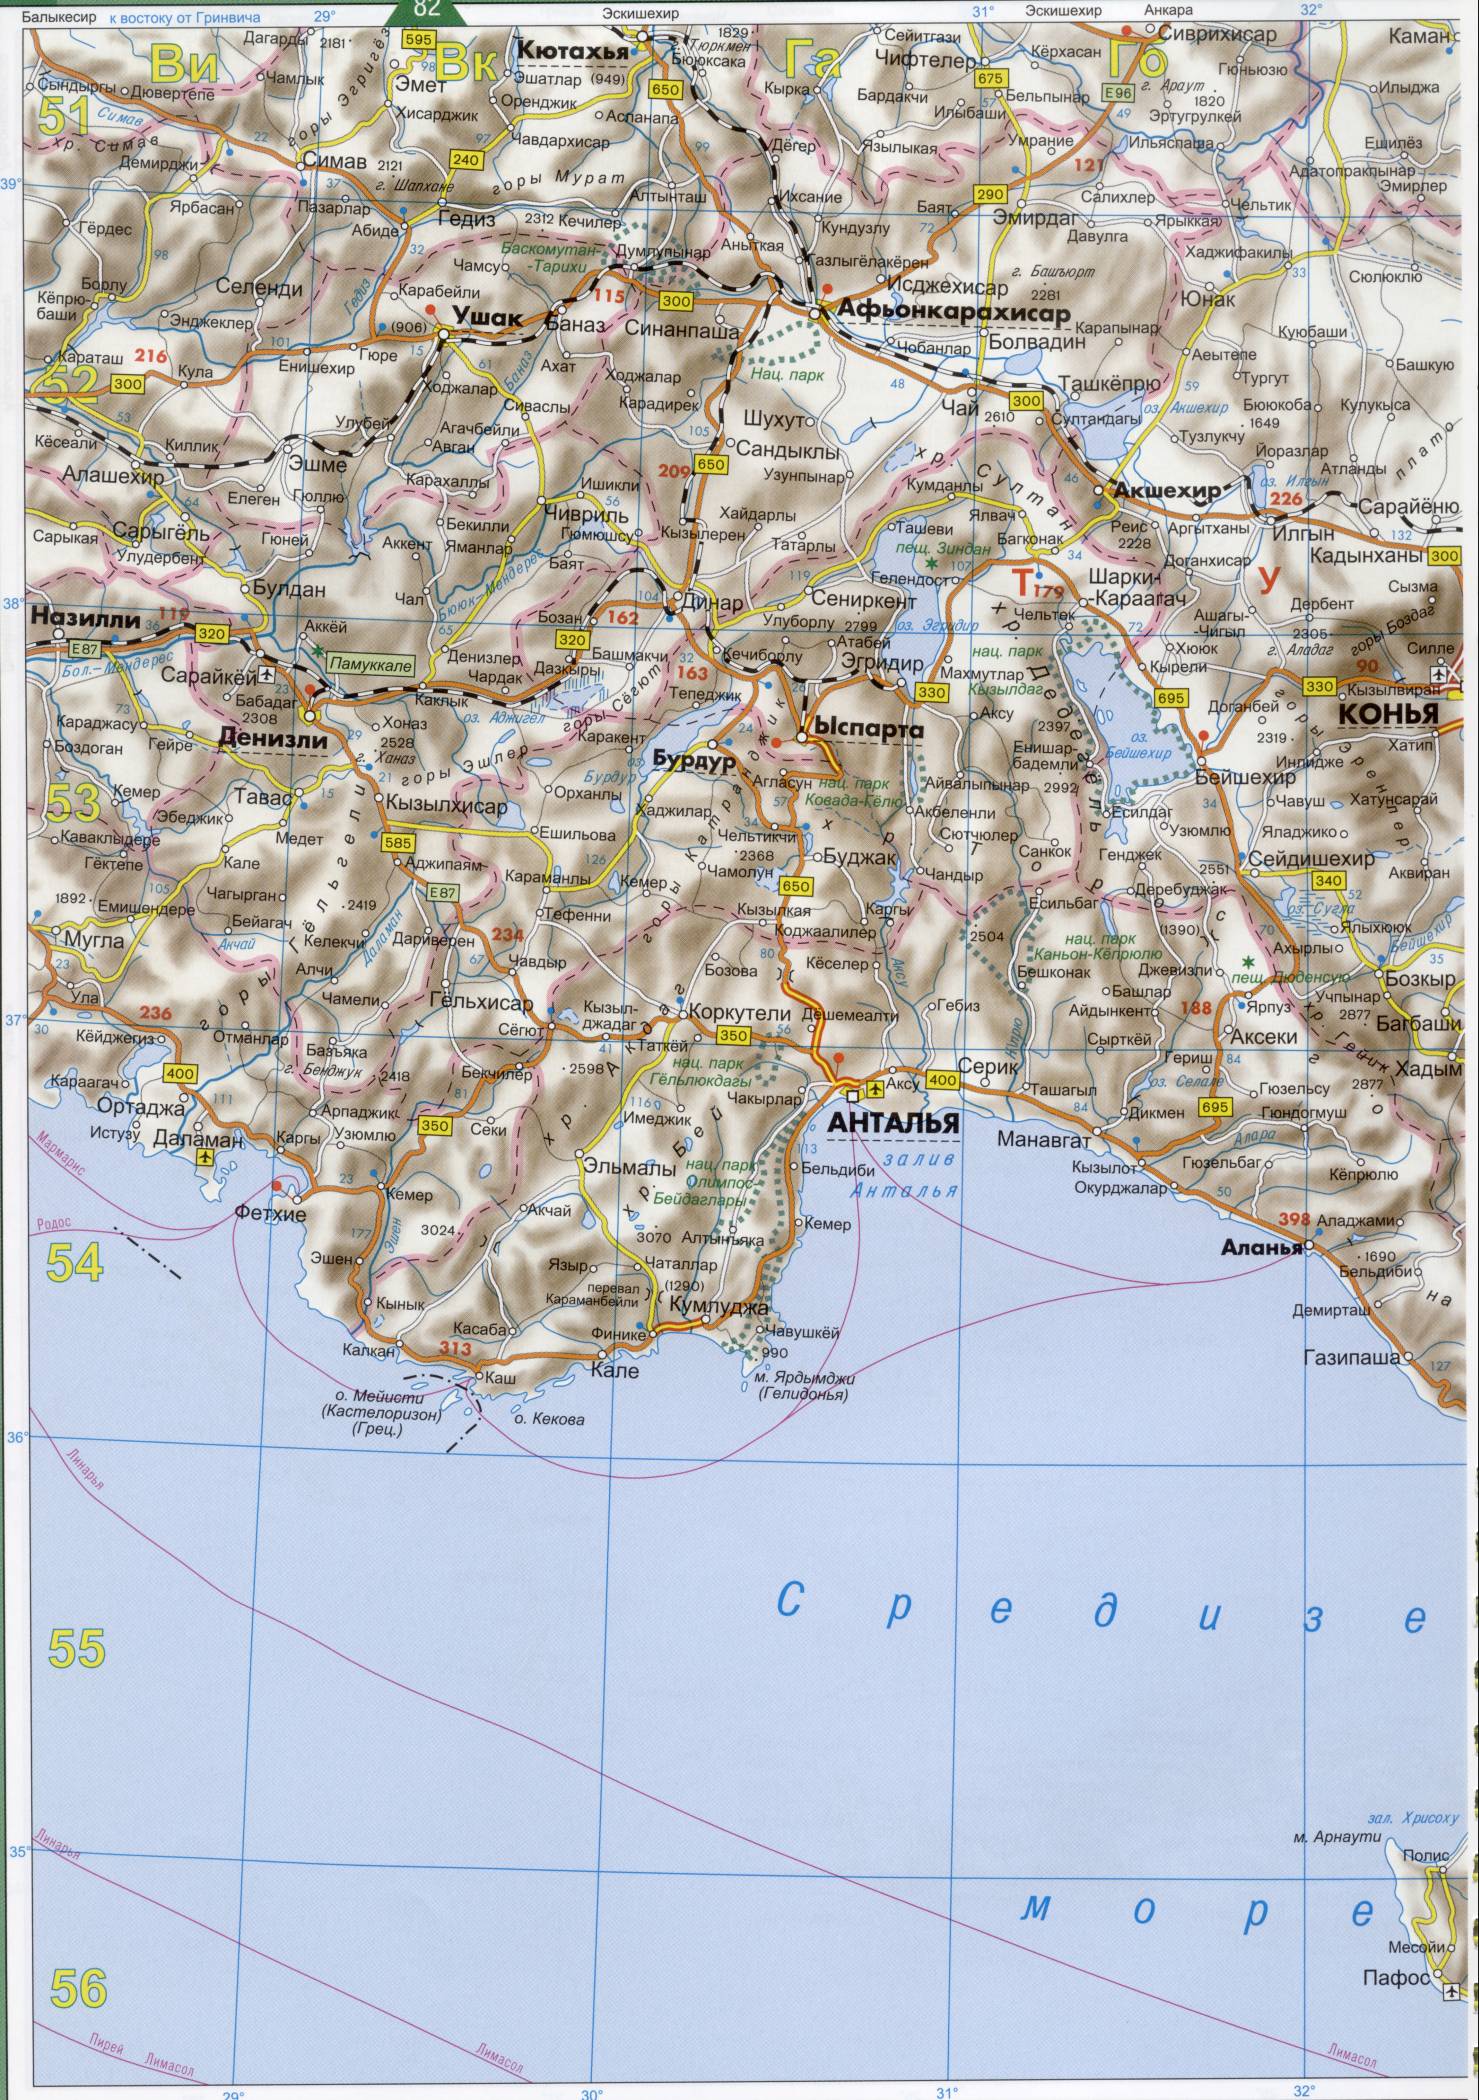 Карта Турции. Подробная карта Турции на русском языке. Карта автодорог Турции на русском, C1 - 